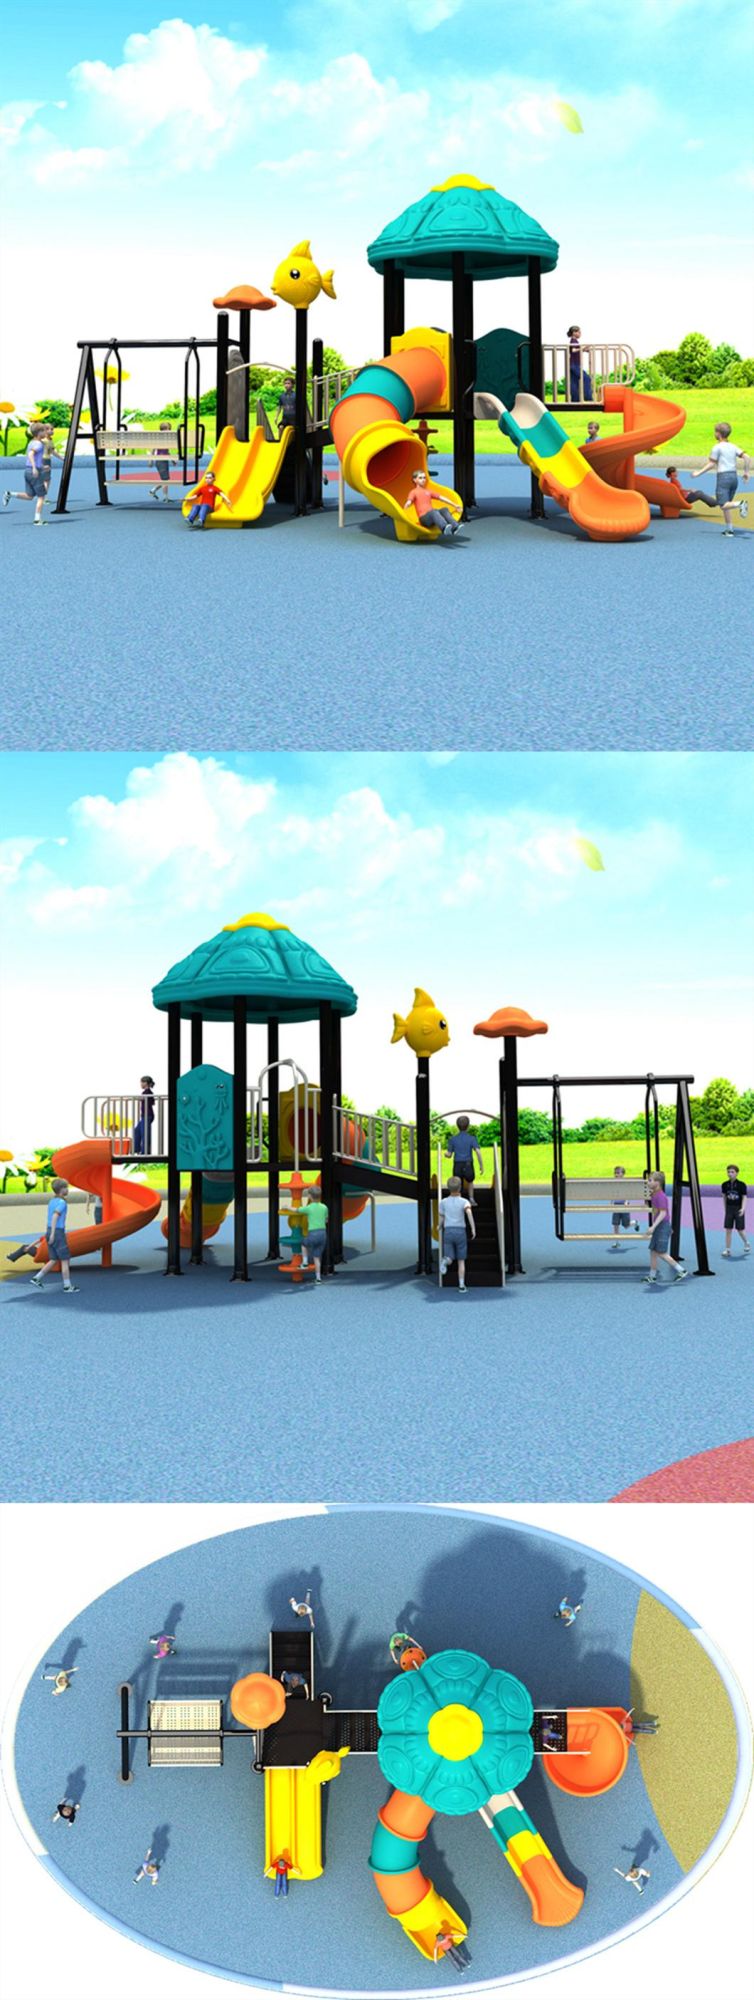 Community Outdoor Playground Slides Kindergarten Children Amusement Park Equipment 488b